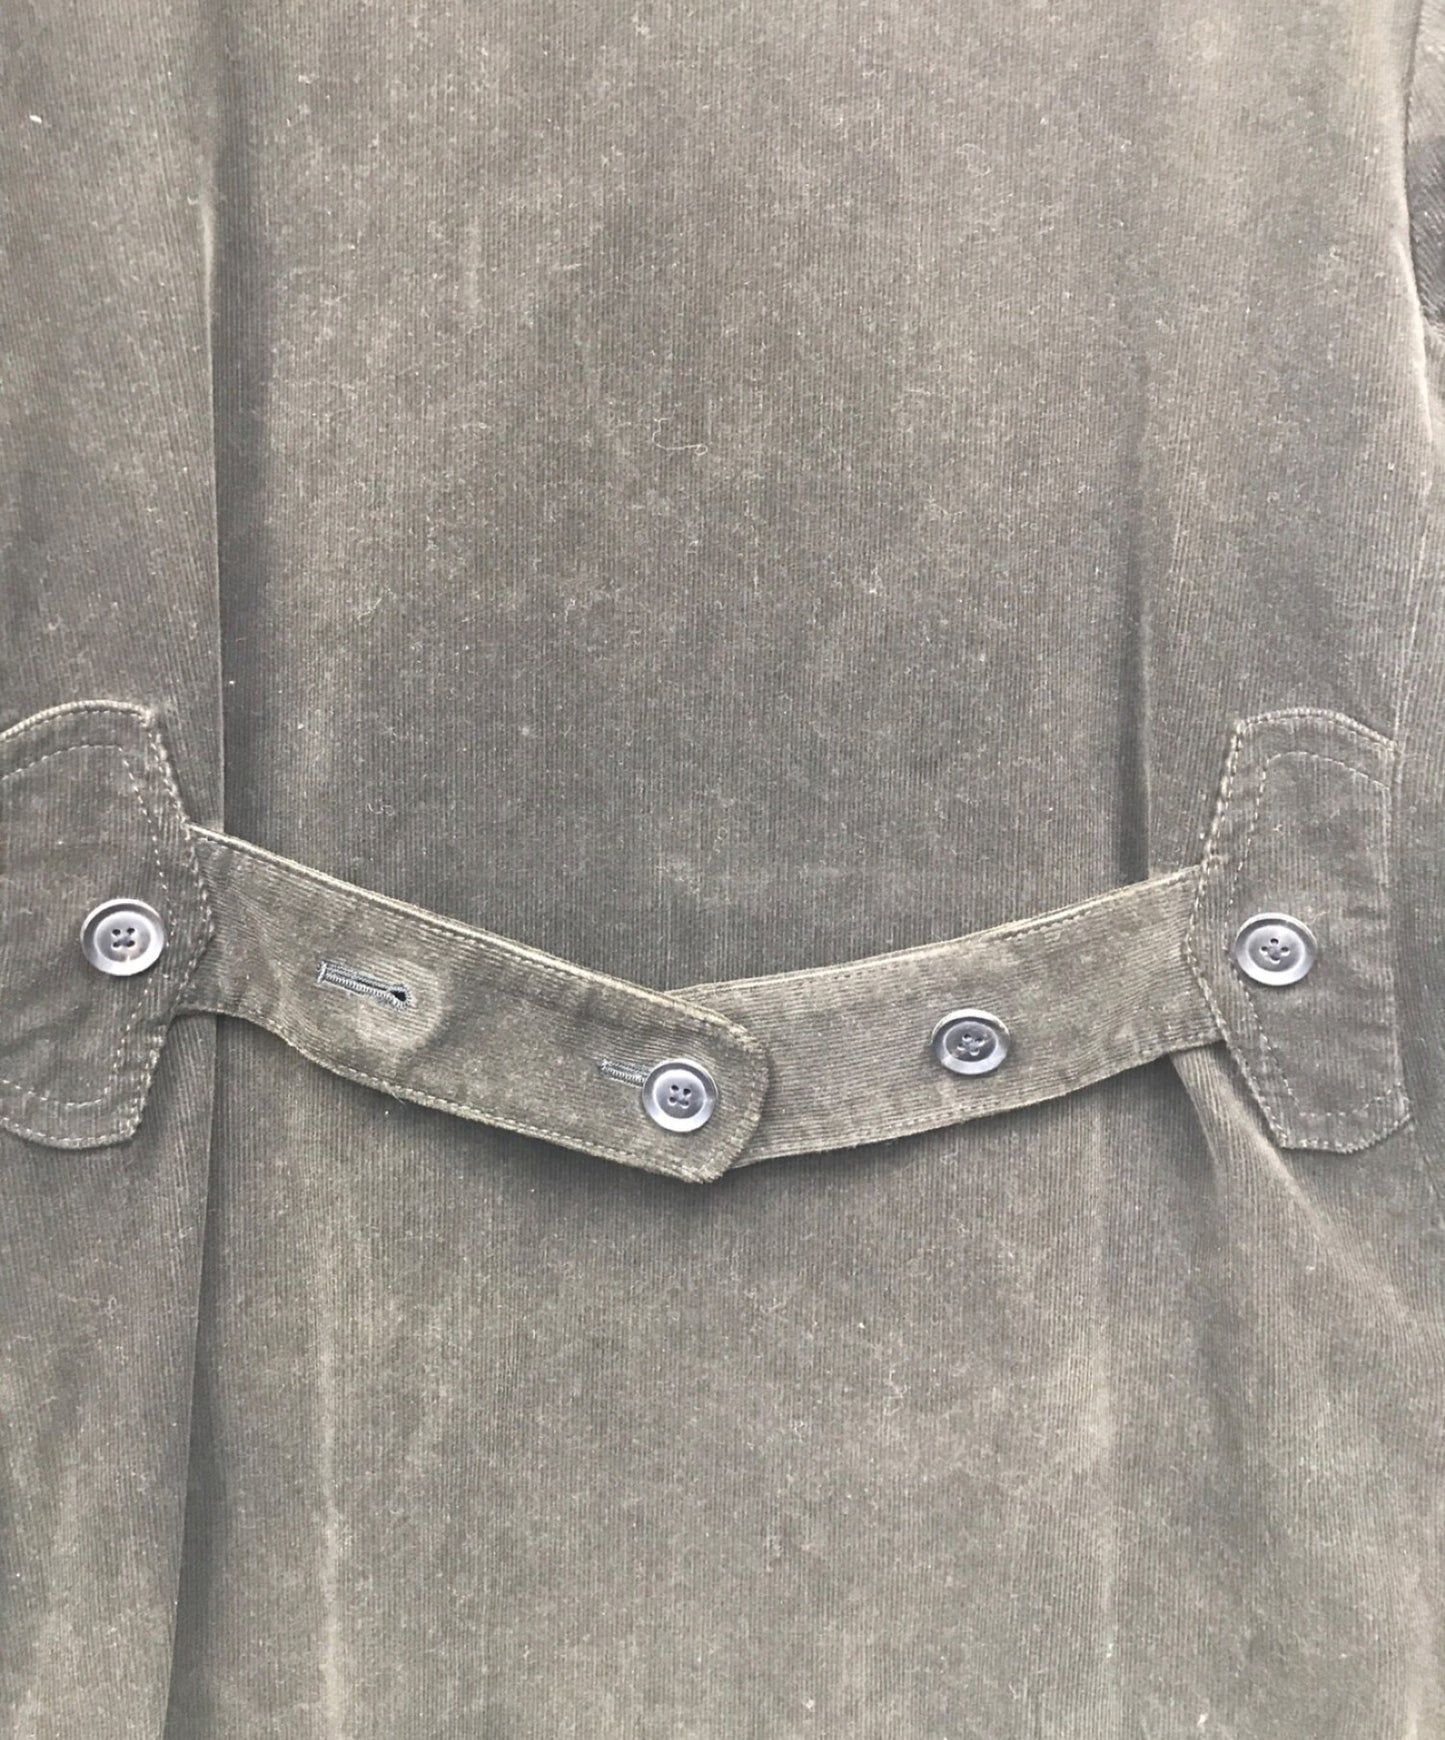 [Pre-owned] Y's Corduroy Short Coat MB-C02-003